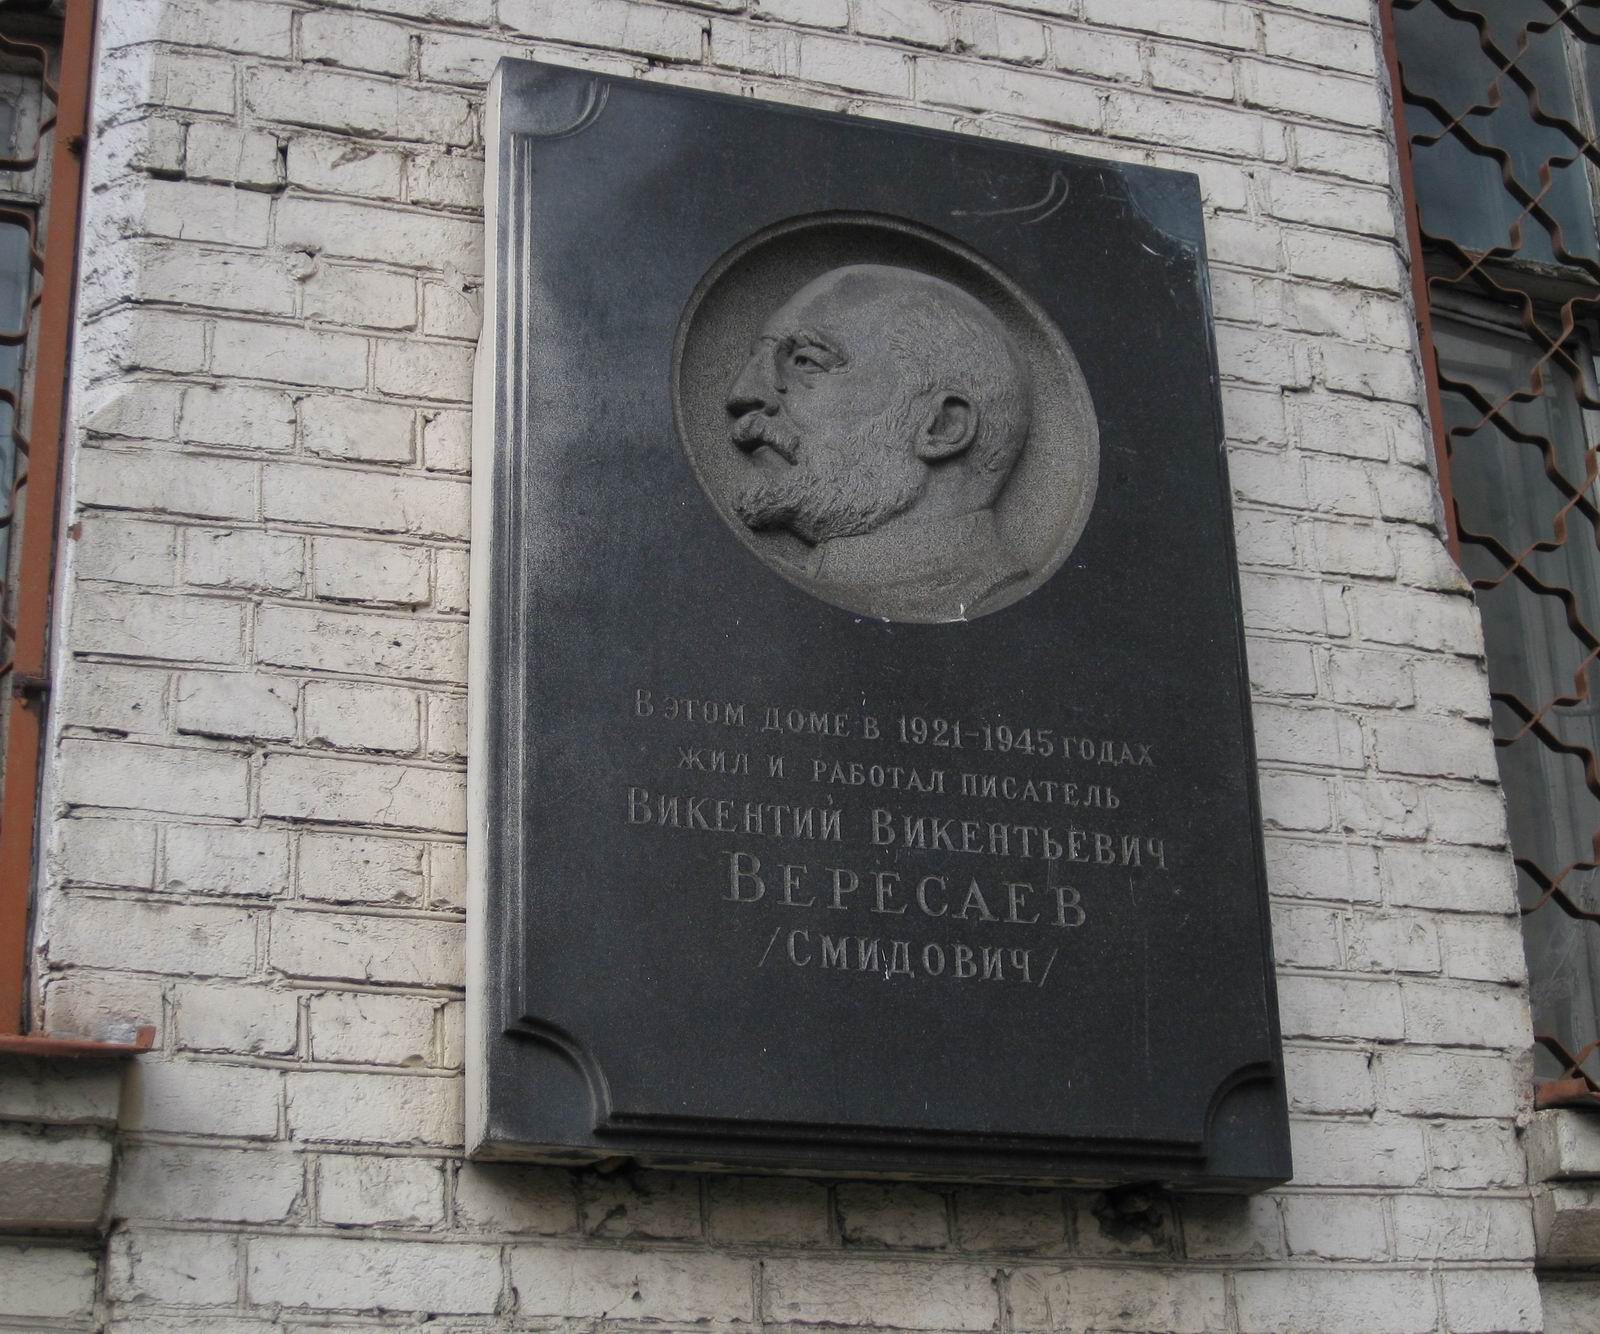 Мемориальная доска Вересаеву В.В. (1867–1945), ск. П.В.Данилов, в Шубинском переулке, дом 2, открыта в апреле 1956.